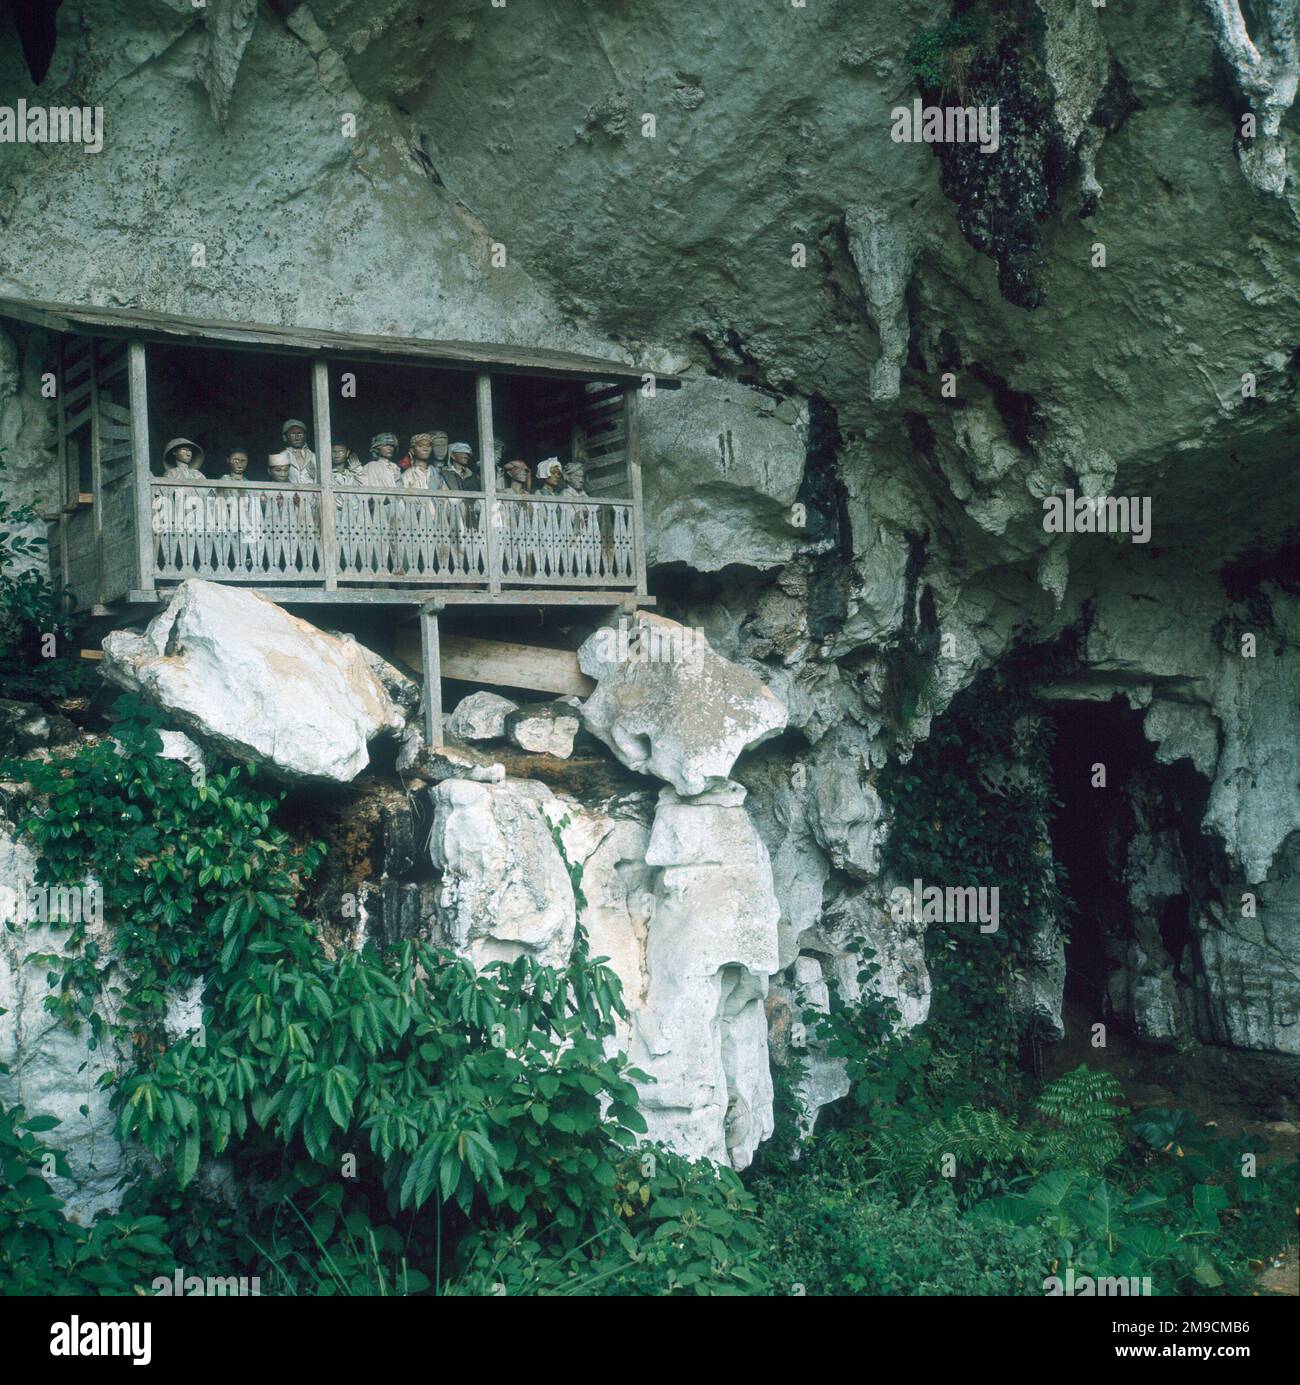 Der Toraja-Stamm legt die Überreste seiner Vorfahren in Särgen ab, die in Höhlen begraben sind, die in hohen Klippen ausgehöhlt sind und von lebensechten Statuen bewacht werden, die von einem „Balkon“ aus blicken. Stockfoto